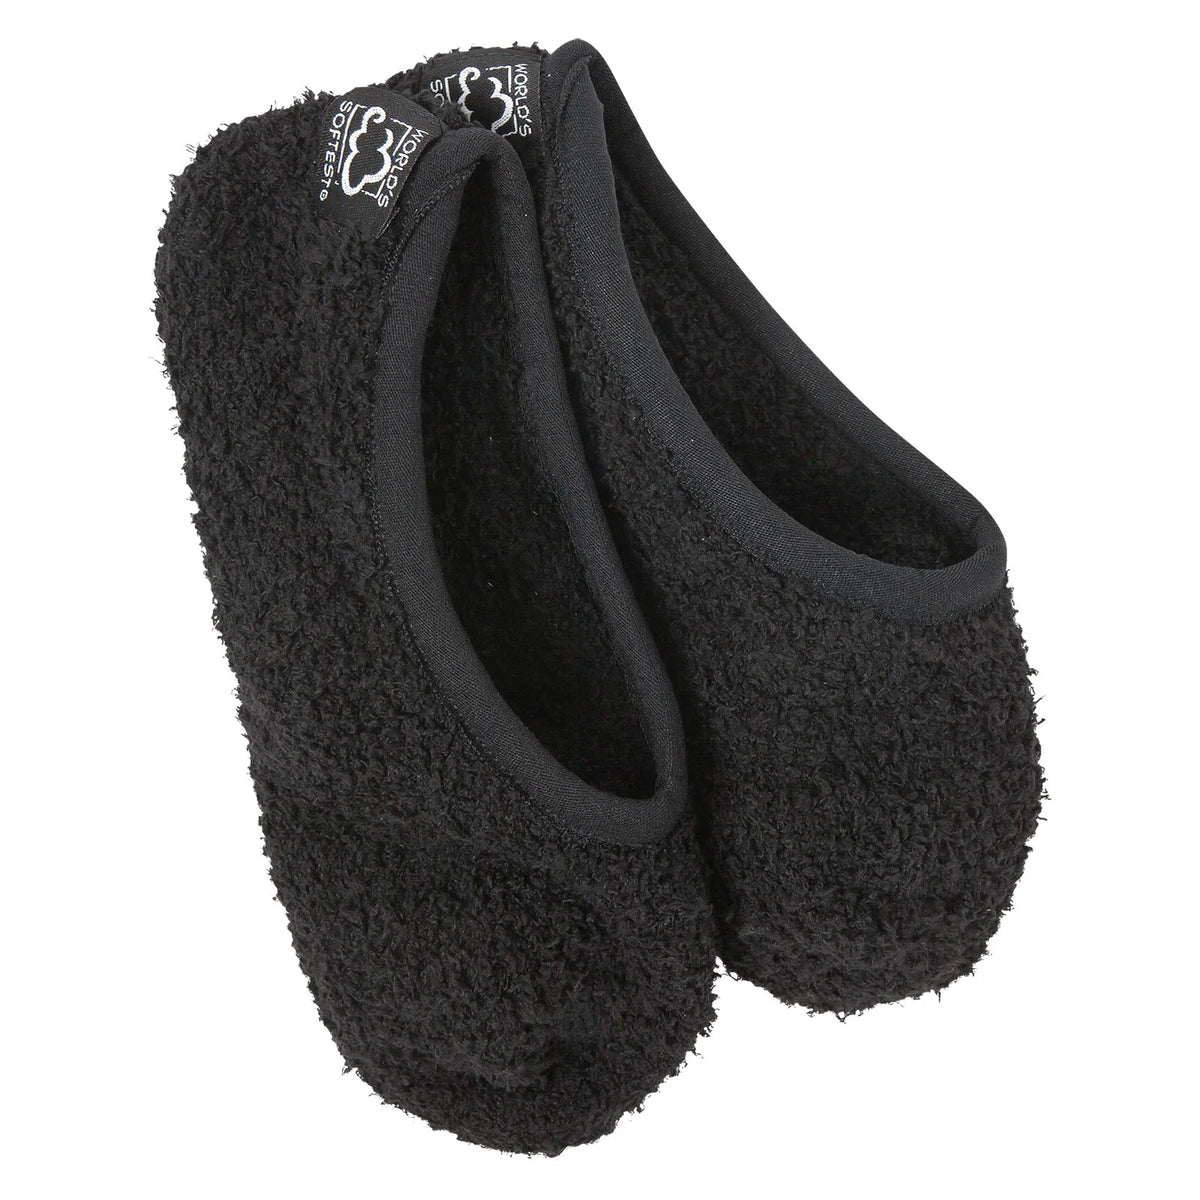 Cozy footsie socks